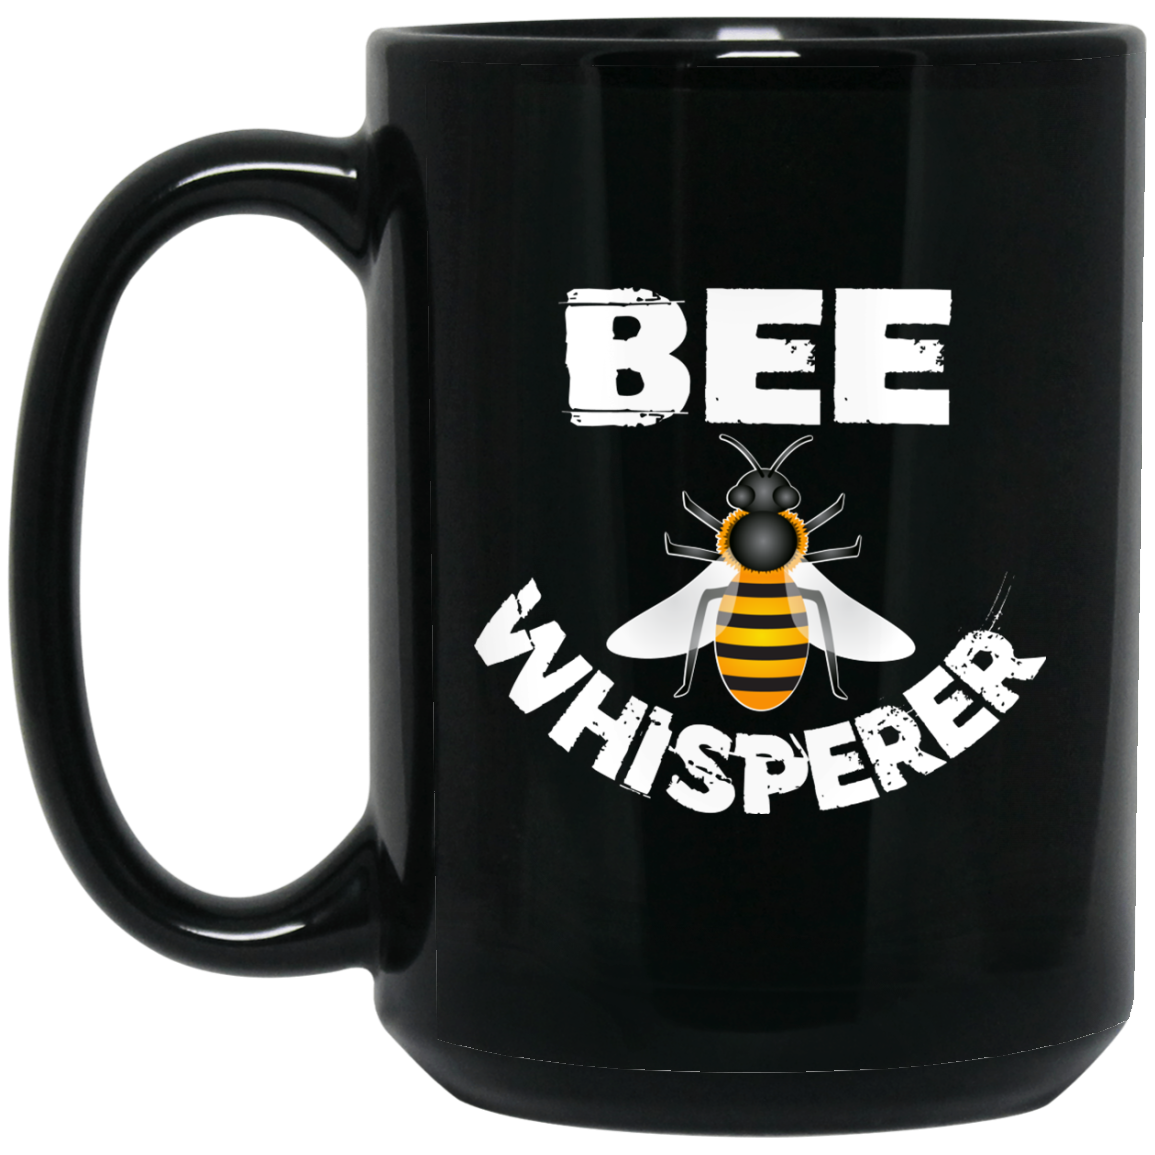 Bee whisperer Coffee Mug - Beekeeper Gifts - GoneBold.gift